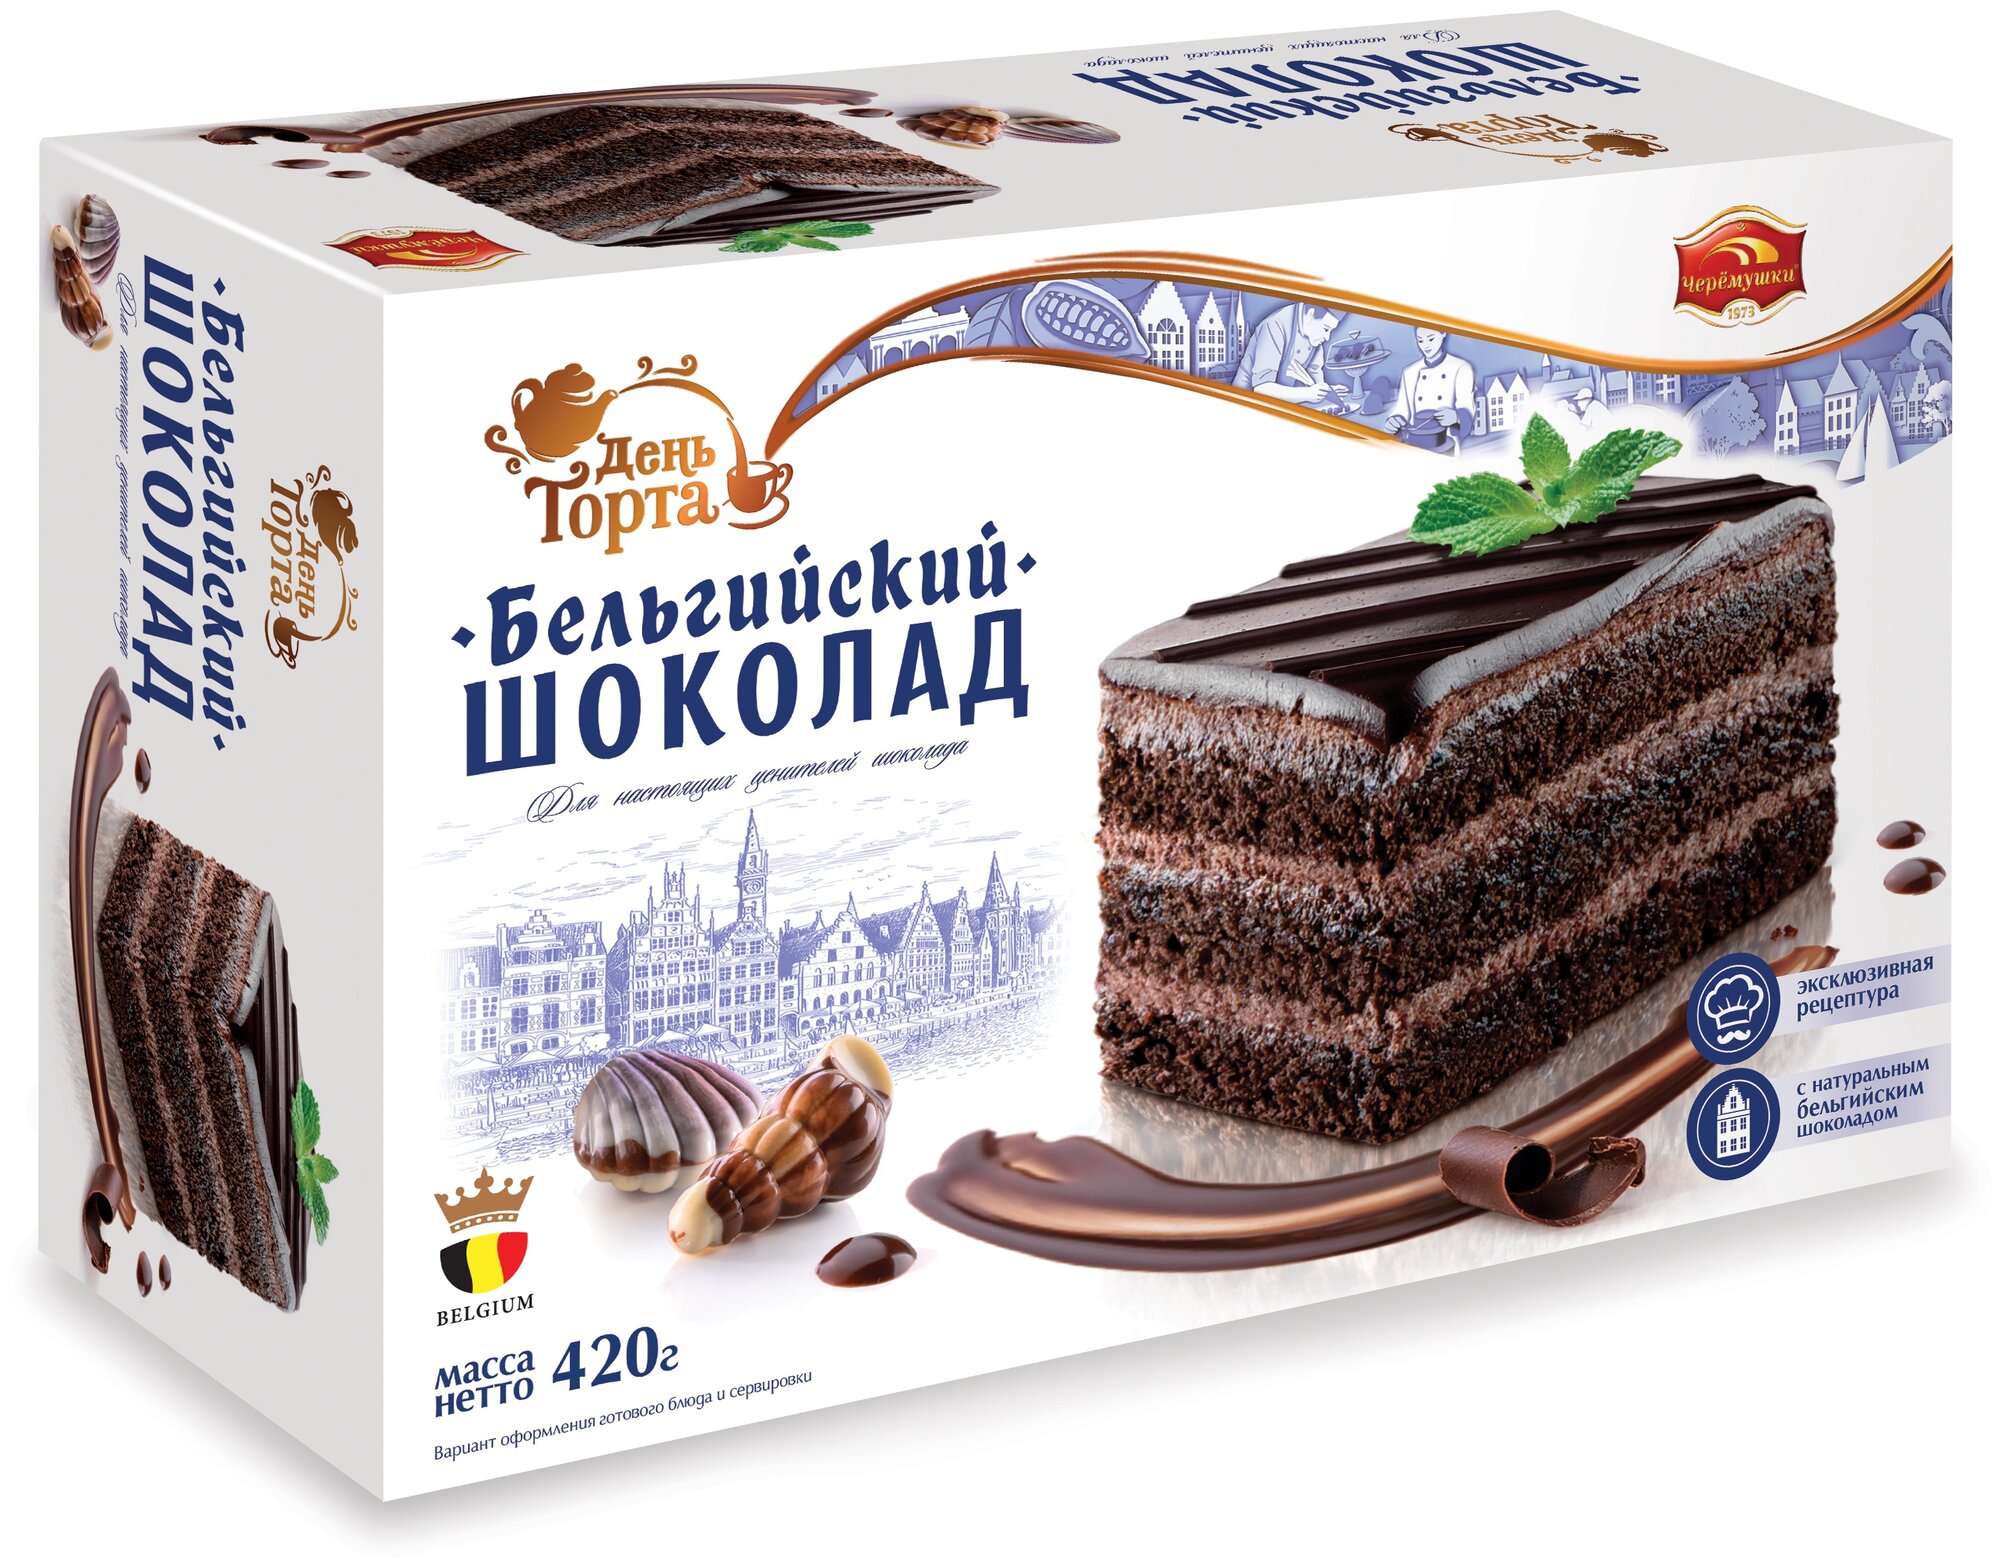 Торт Бельгийский Шоколад 420г/Черёмушки/Вкус, знакомый с детства. — купить по выгодной цене на Яндекс.Маркете